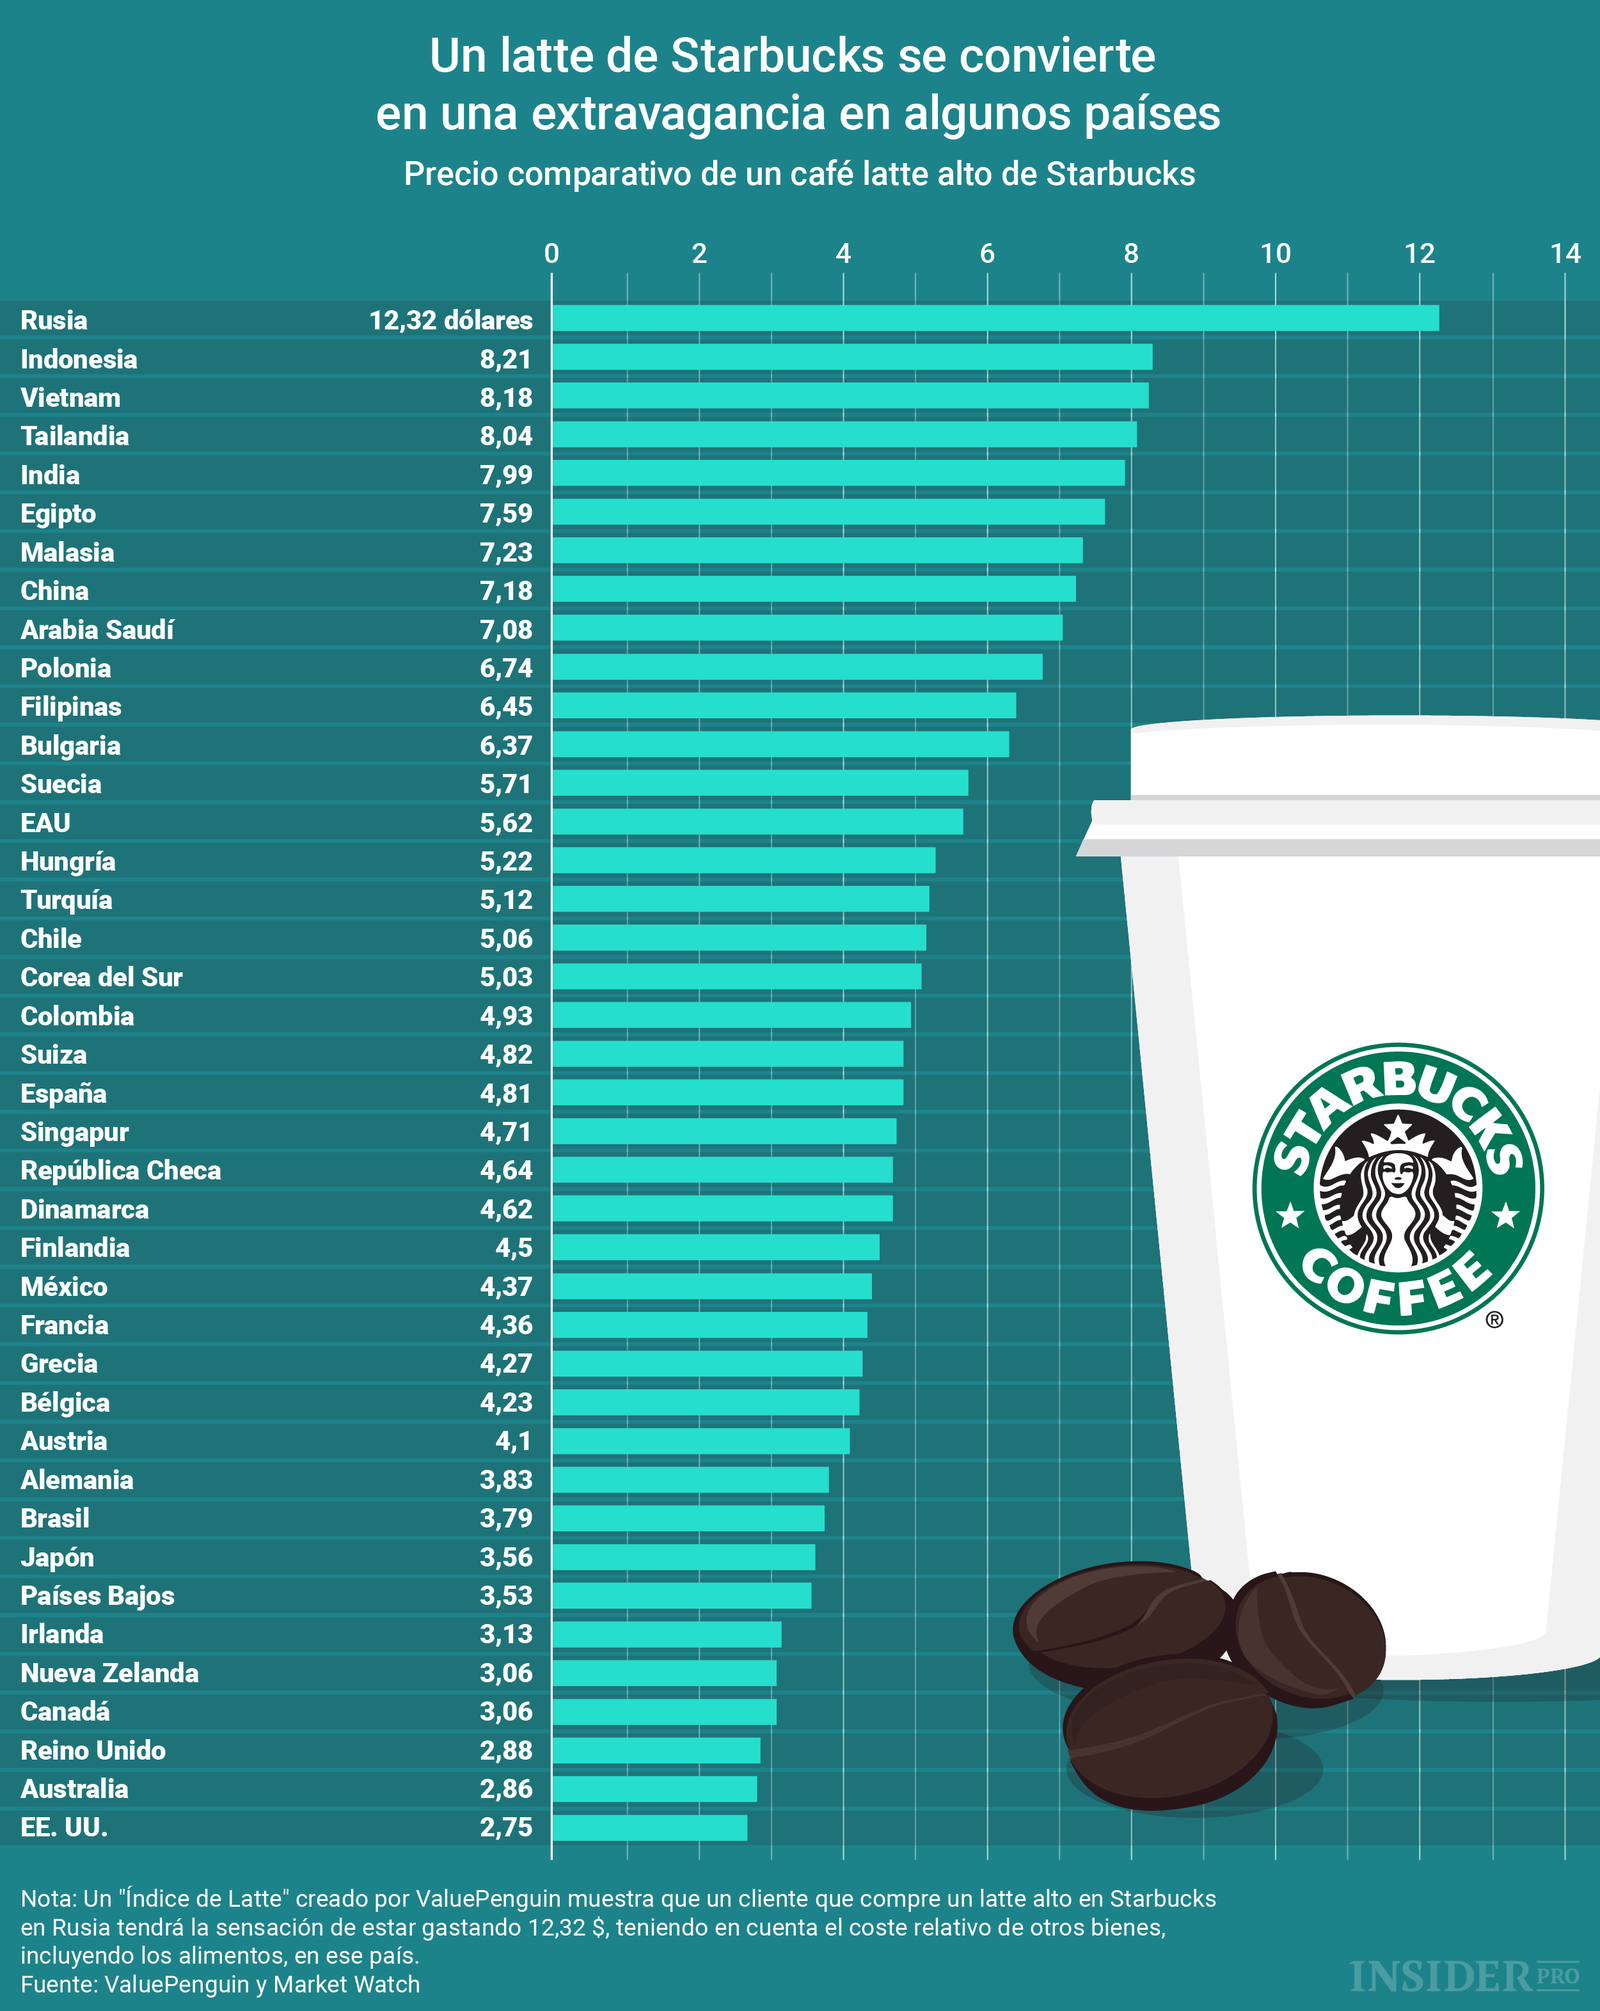 Gráfico del día Un latte de Starbucks es un lujo en algunos países